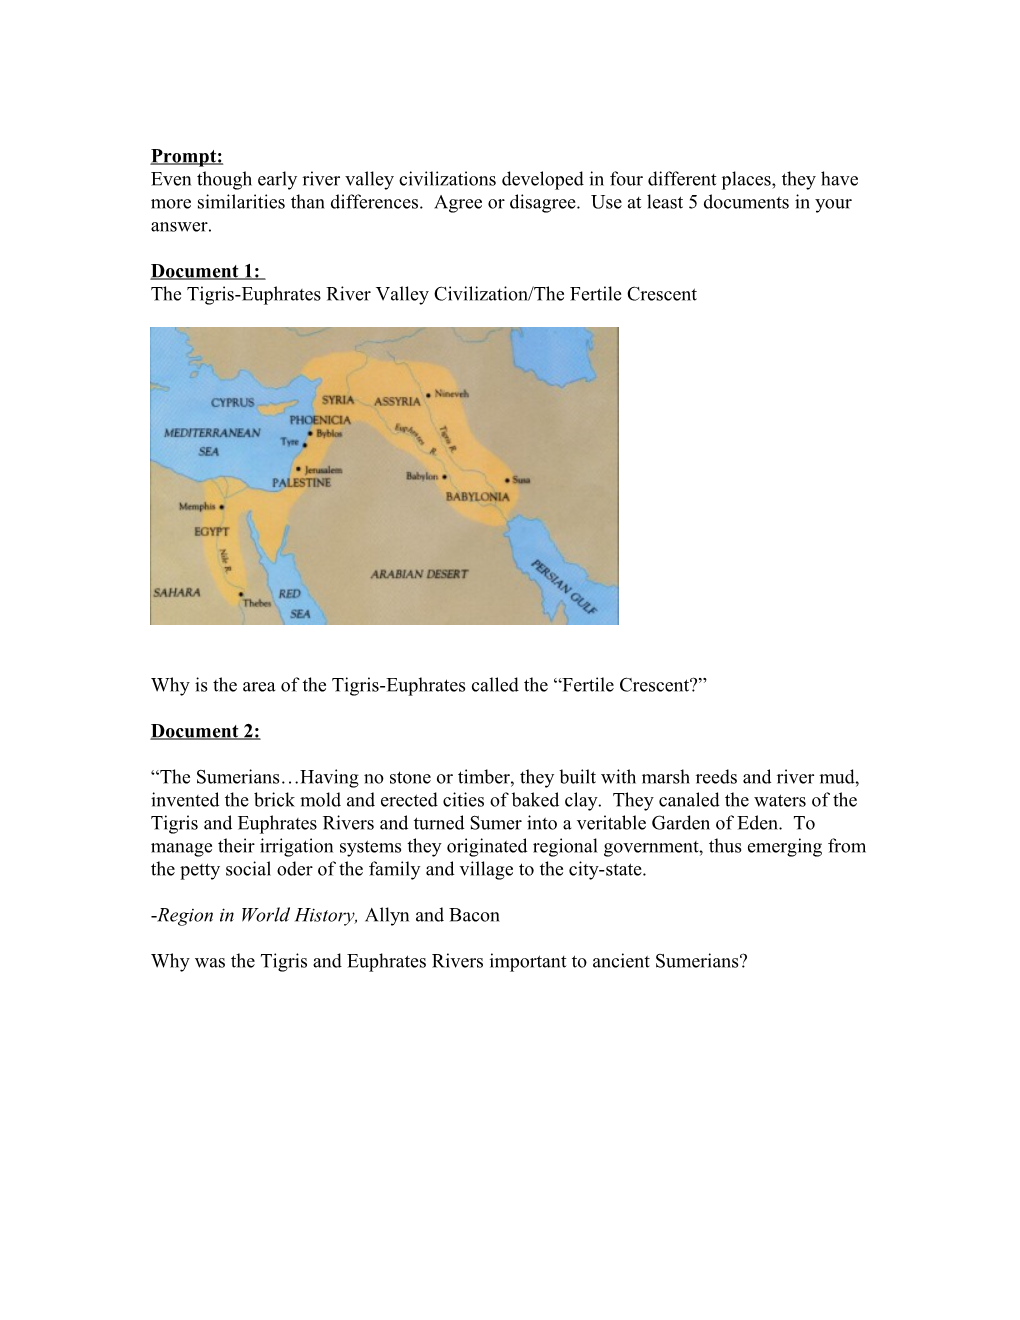 The Tigris-Euphratesrivervalley Civilization/The Fertile Crescent